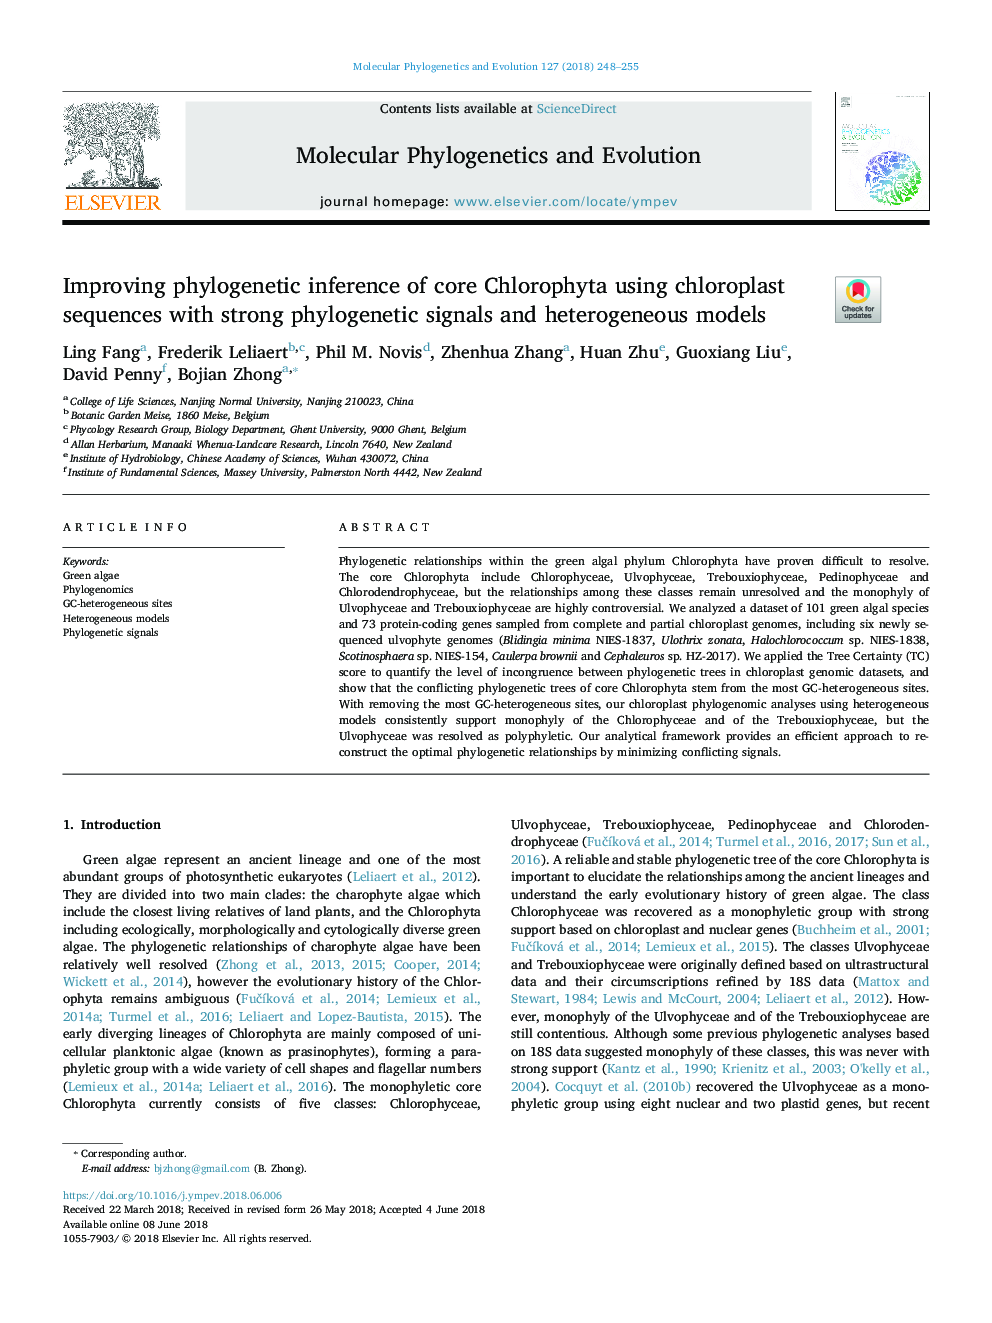 بهبود نتیجه گیری فیلوژنتیک هسته کلروفیتا با استفاده از توالی های کلرورپلاست با سیگنال های فیلوژنتیک قوی و مدل های ناهمگن 